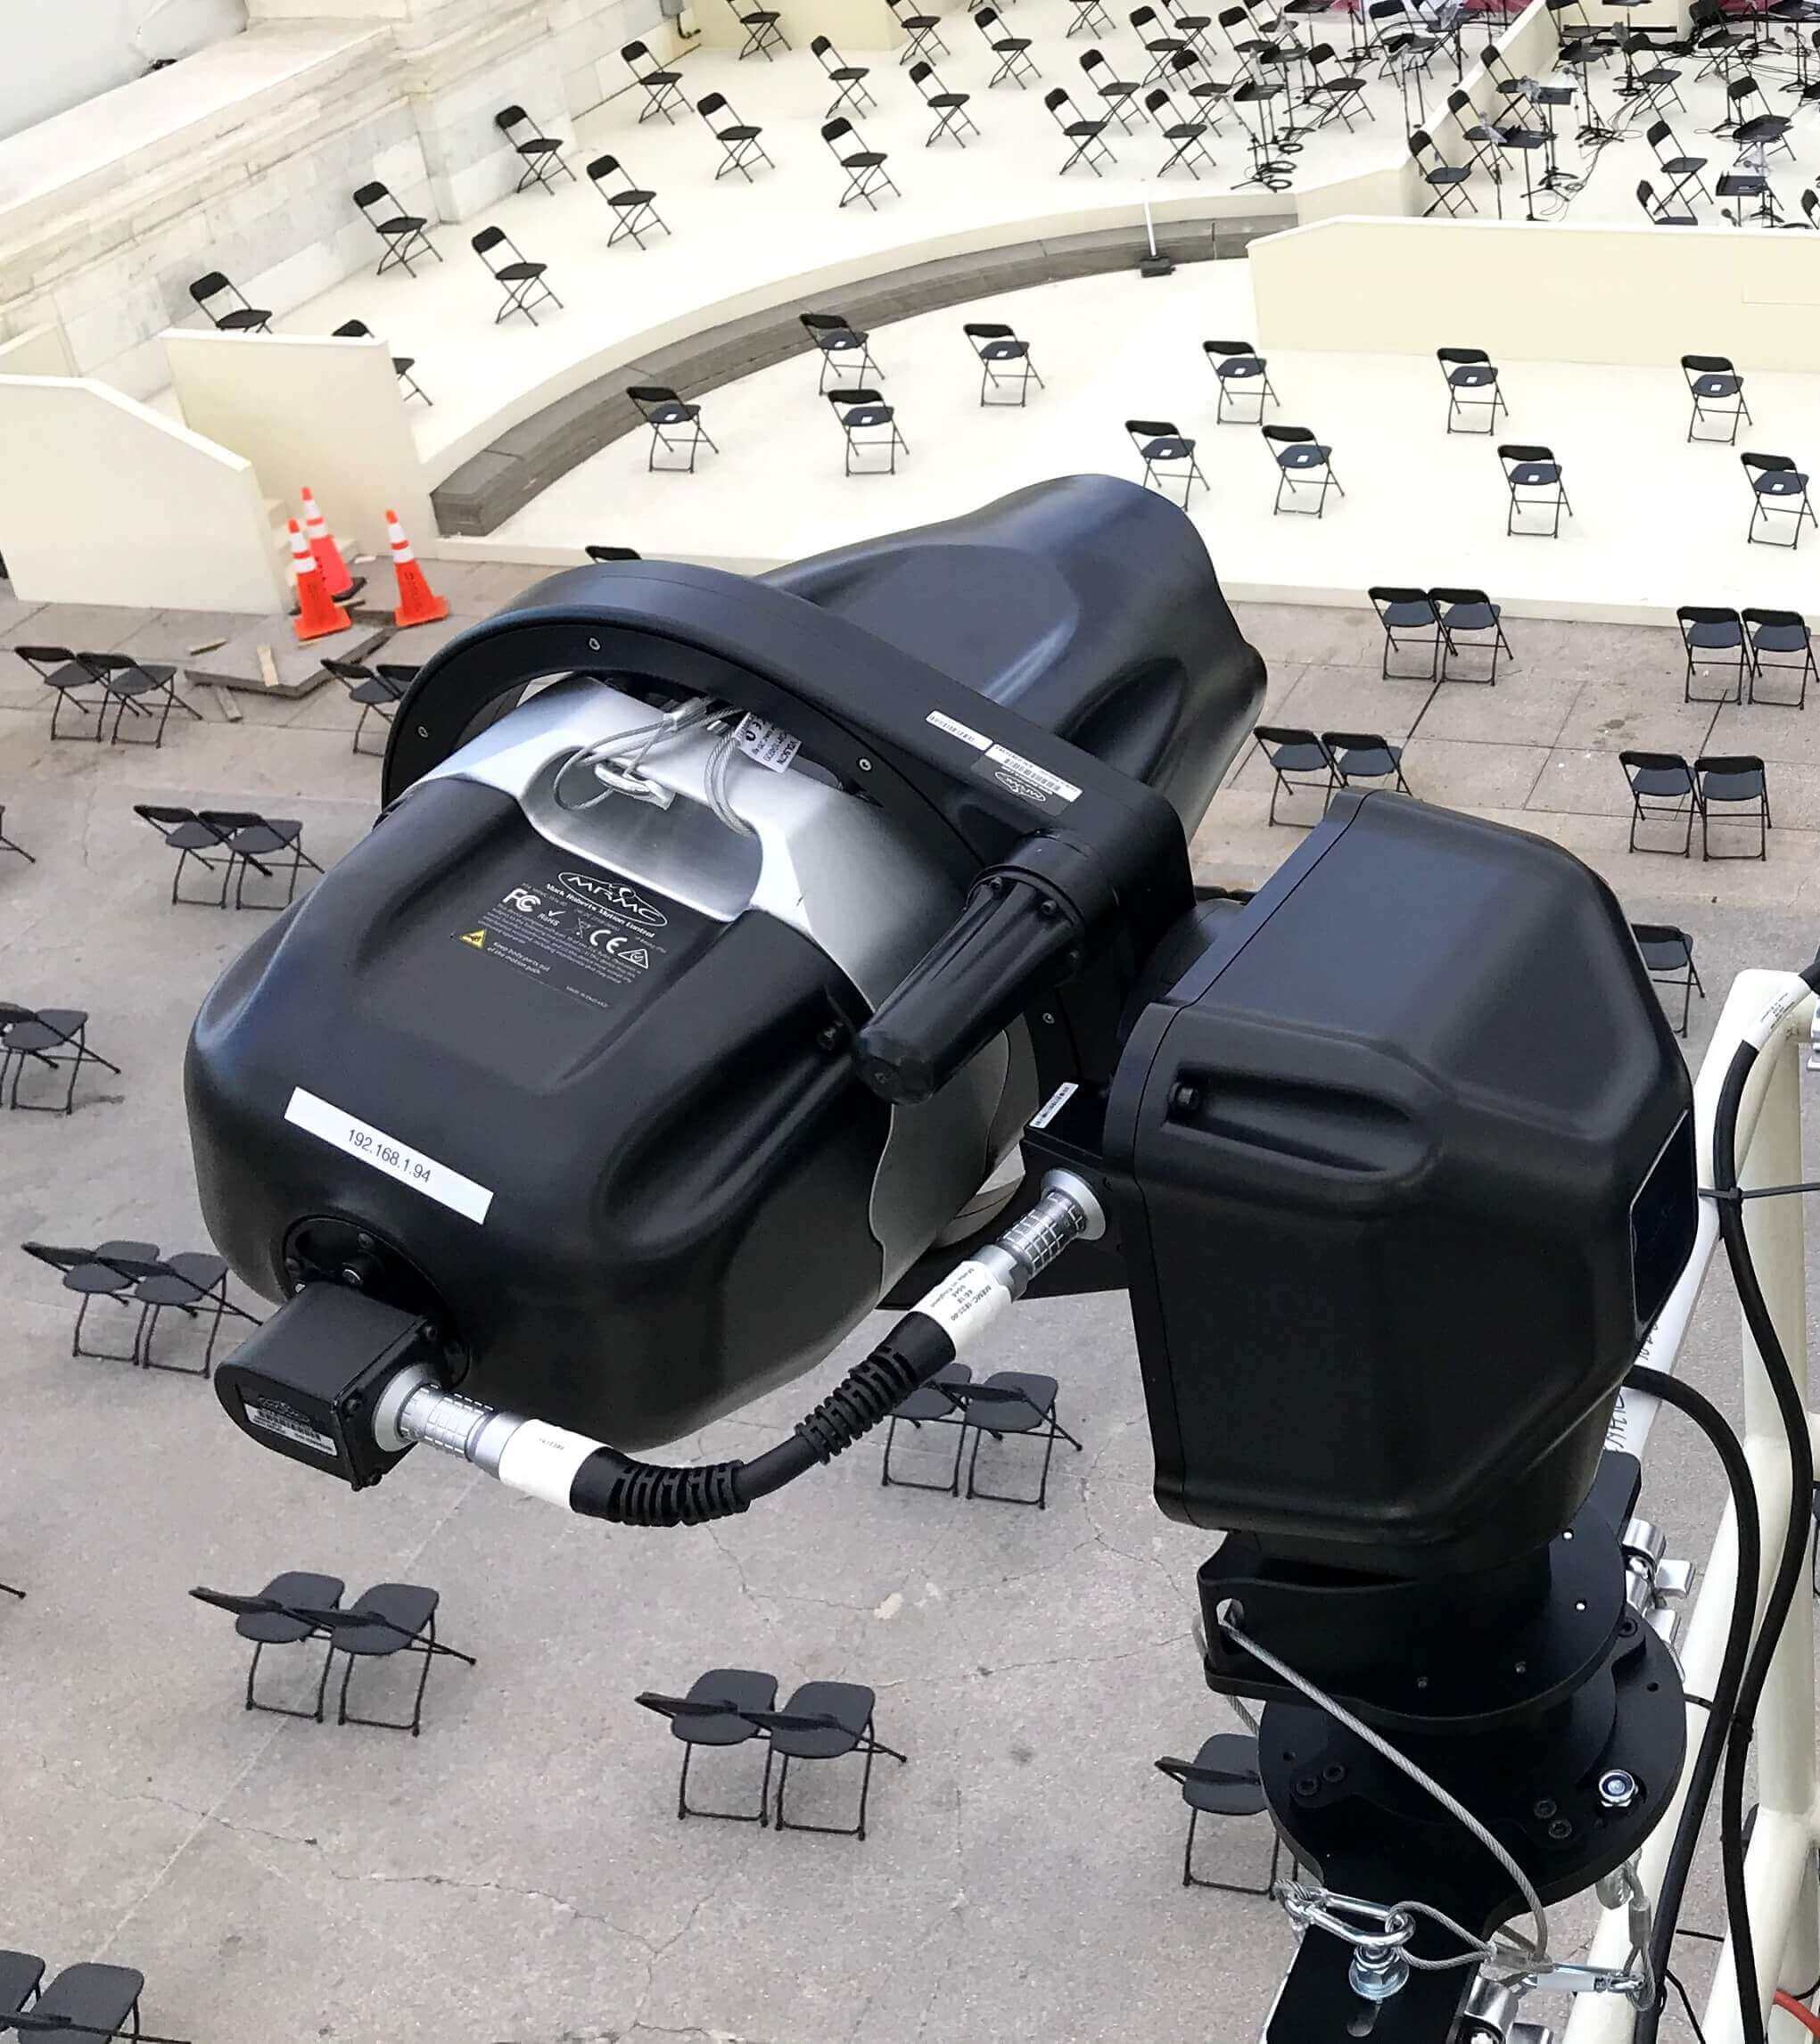 Robotic Pod at Inauguration at Capitol Hill